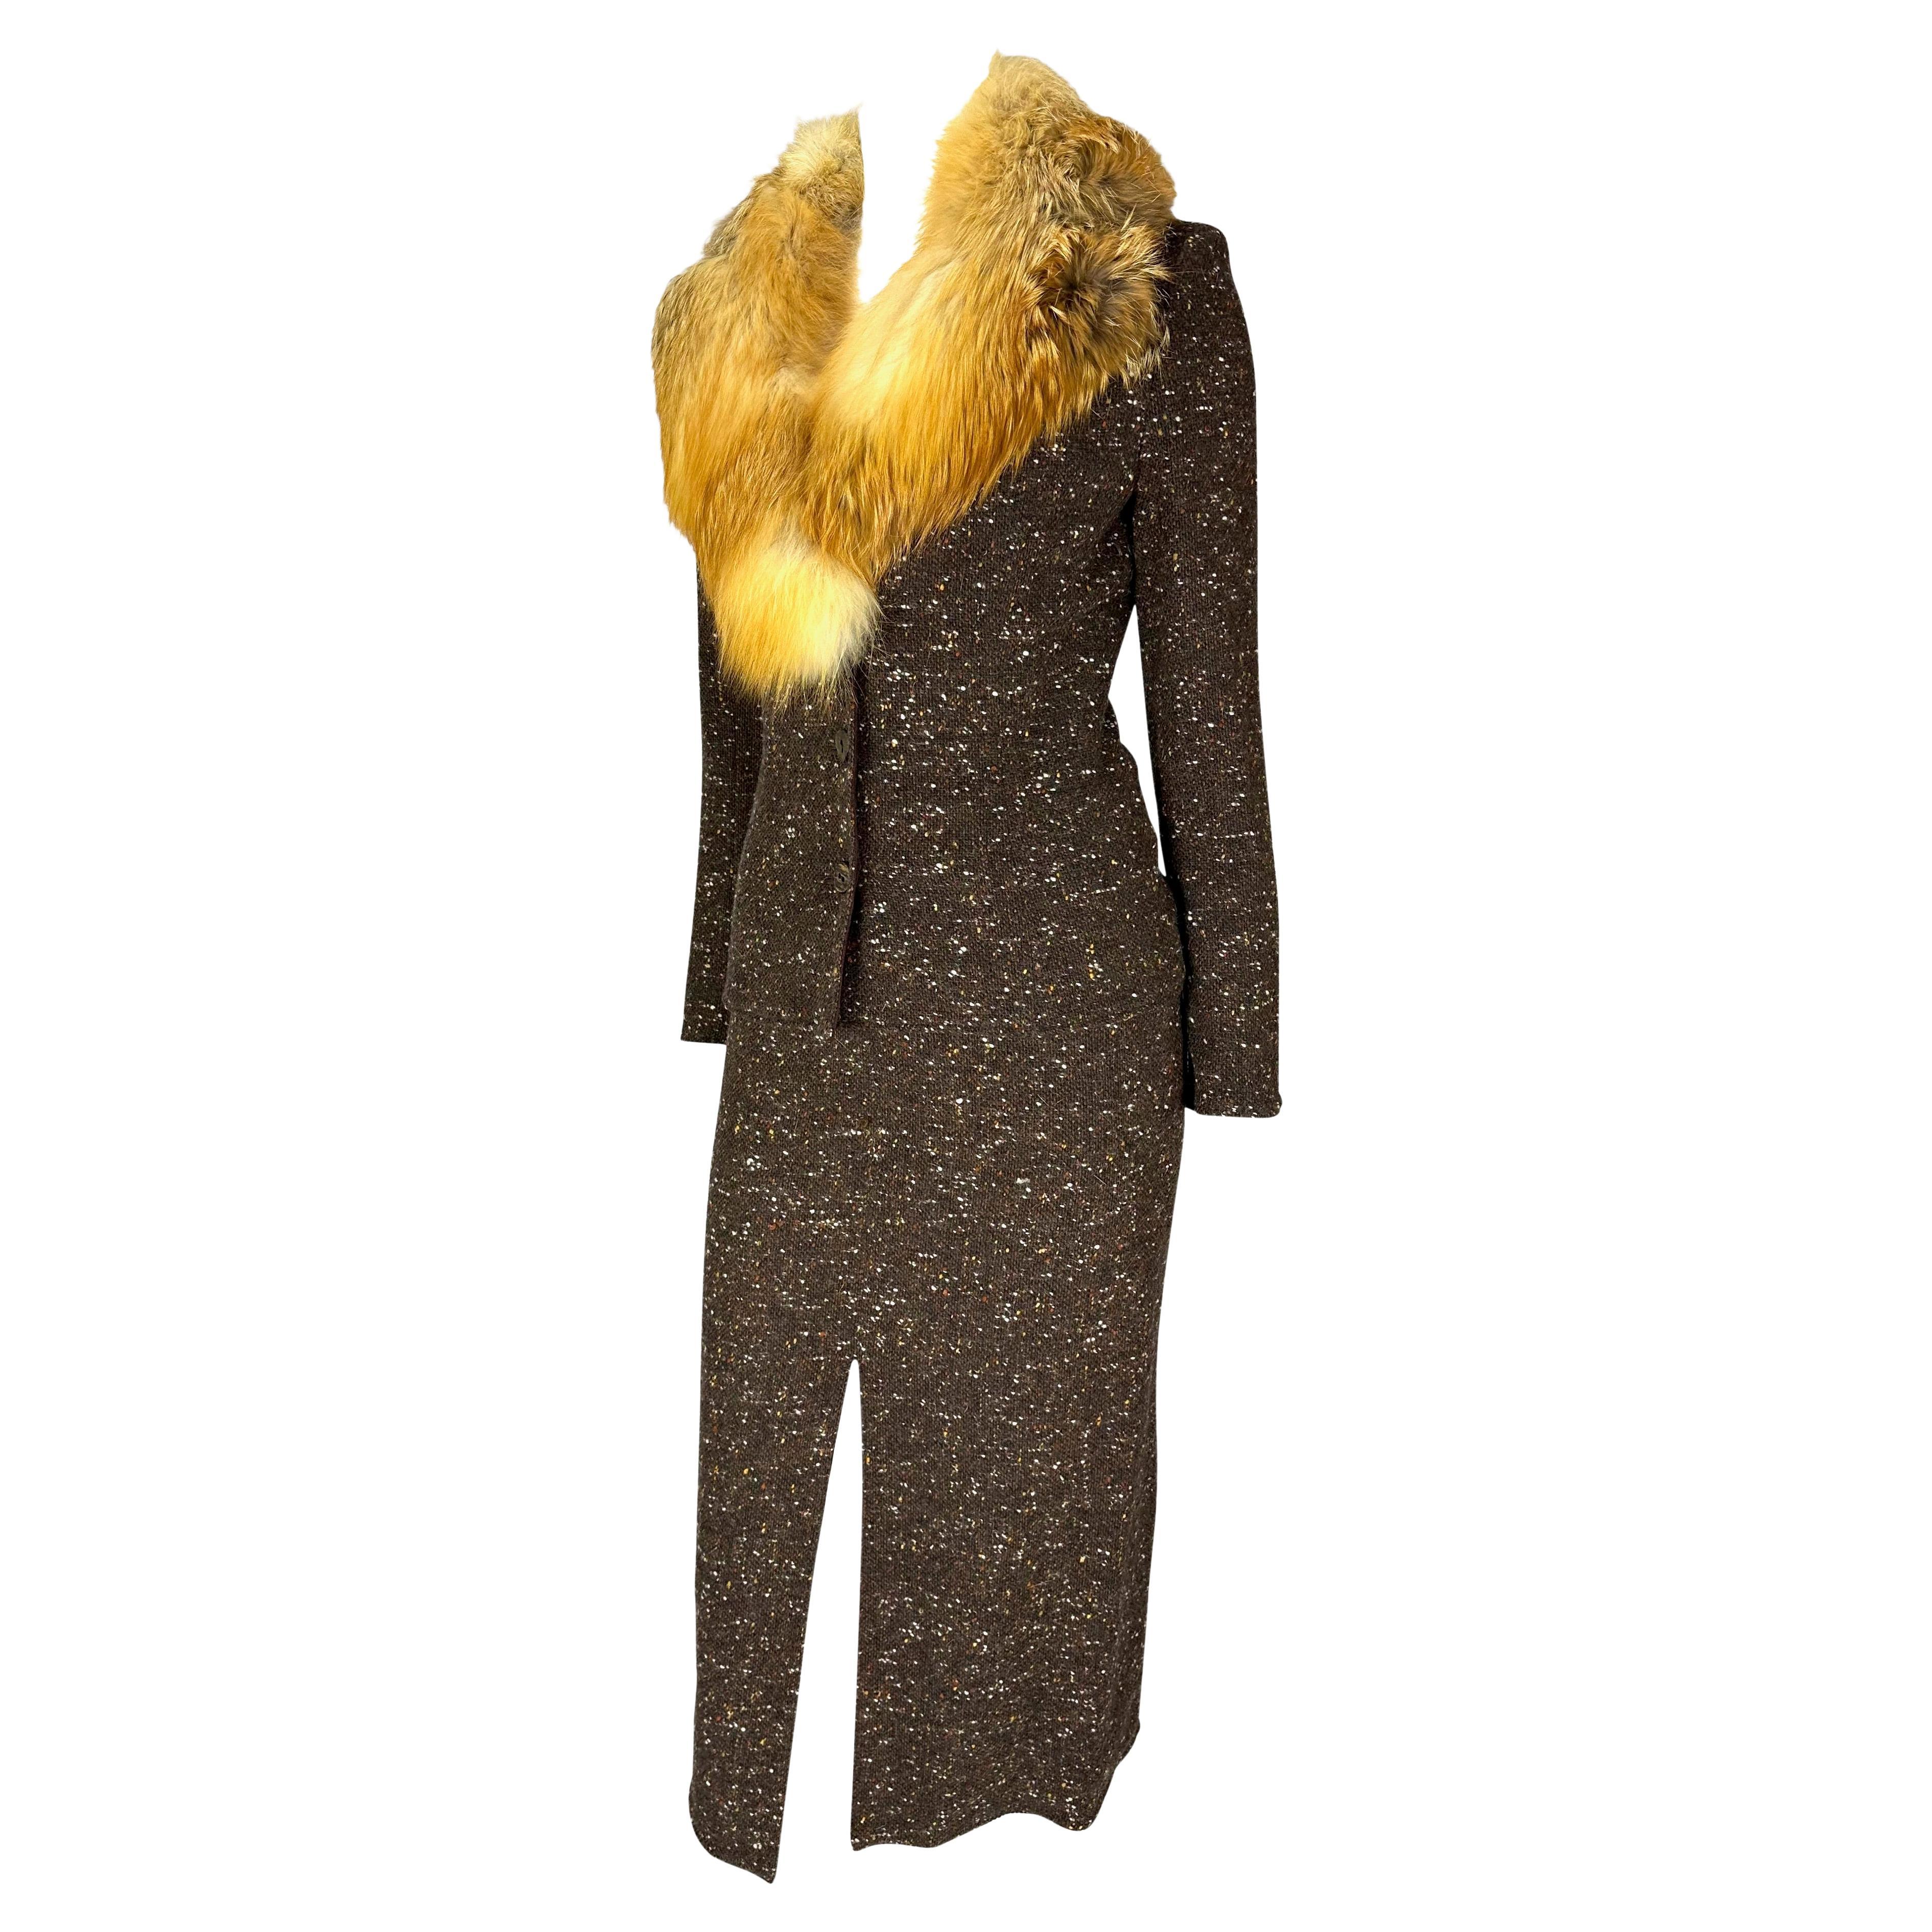 Voici un magnifique ensemble tailleur jupe en tweed marron Christian Dior Boutique conçu par John Galliano. Issu de la collection automne/hiver 2001, cet ensemble est réalisé en tweed marron et doublé en micosuede. Cet ensemble fabuleux est complété